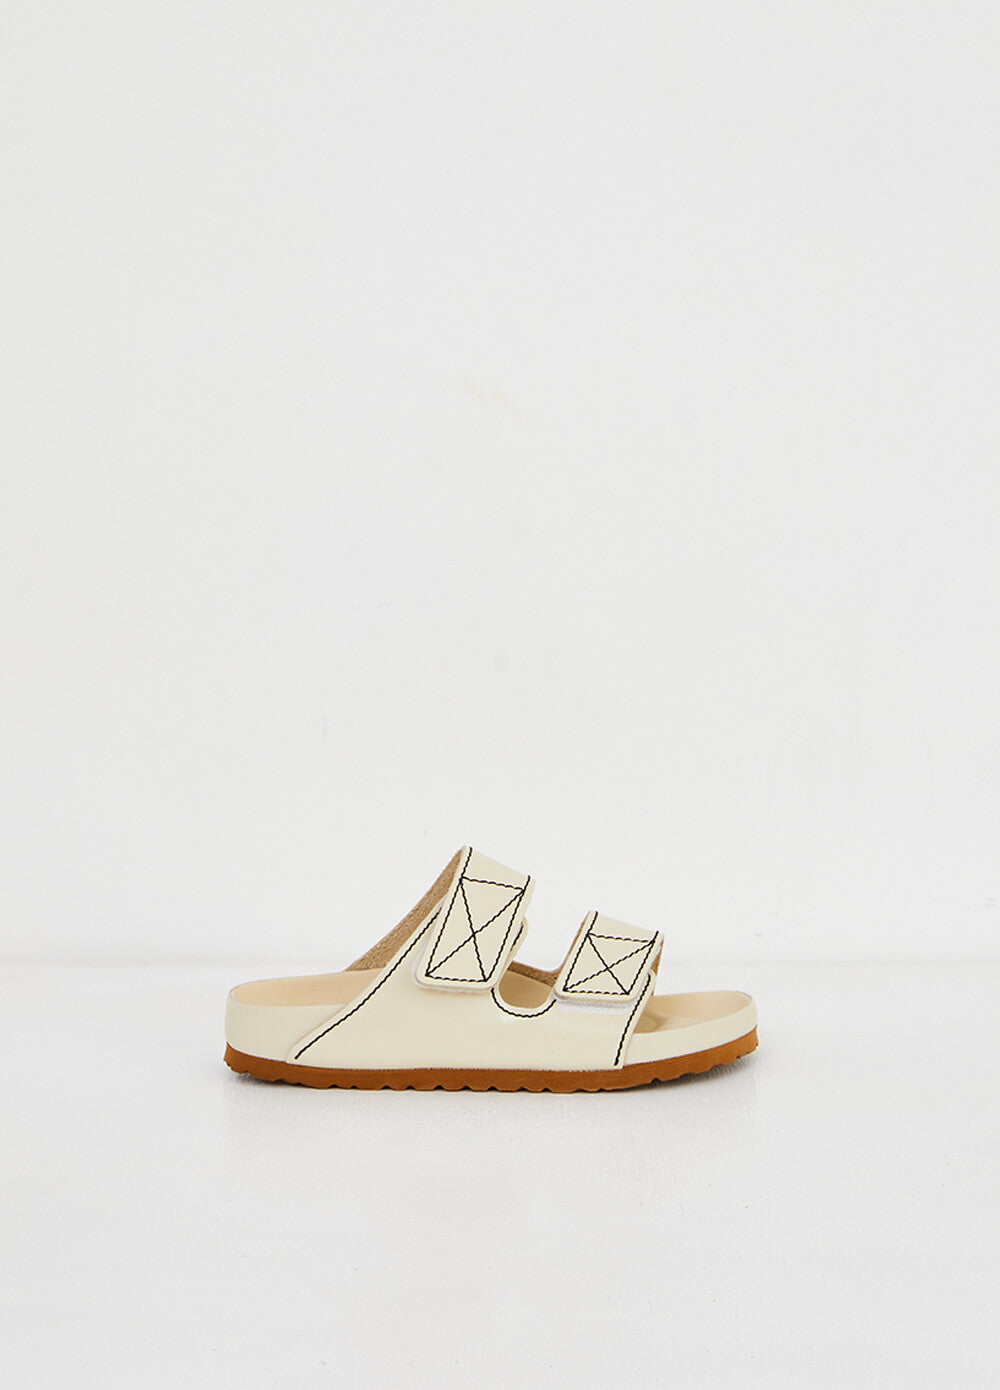 x Birkenstock Arizona Sandals